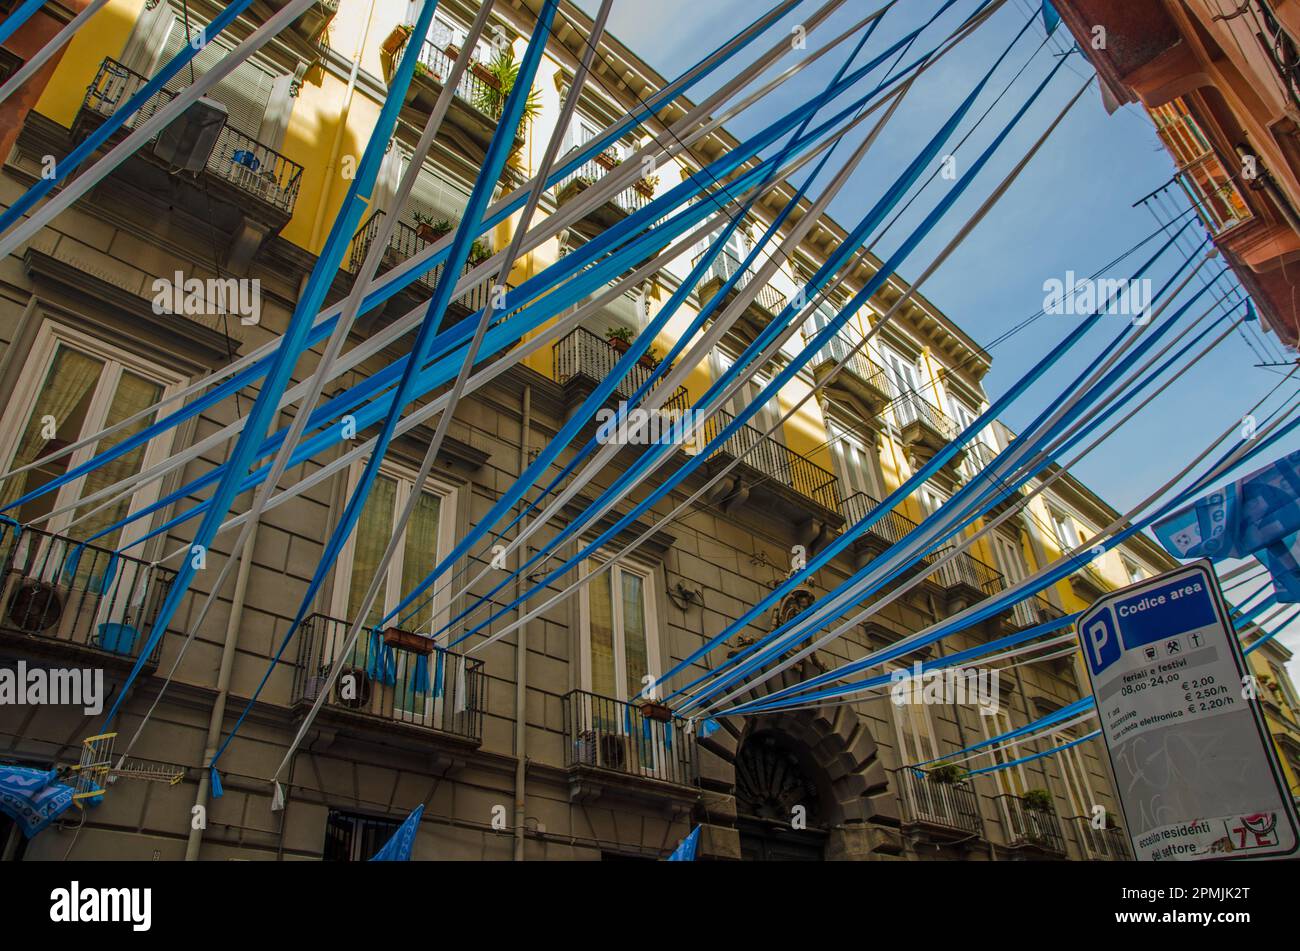 Schauen Sie durch blau-weiße Fahnen, Flaggen und Luftschlangen im historischen Stadtzentrum von Neapel hinauf, während die Bewohner den Erfolg von S.S.C. feiern Stockfoto